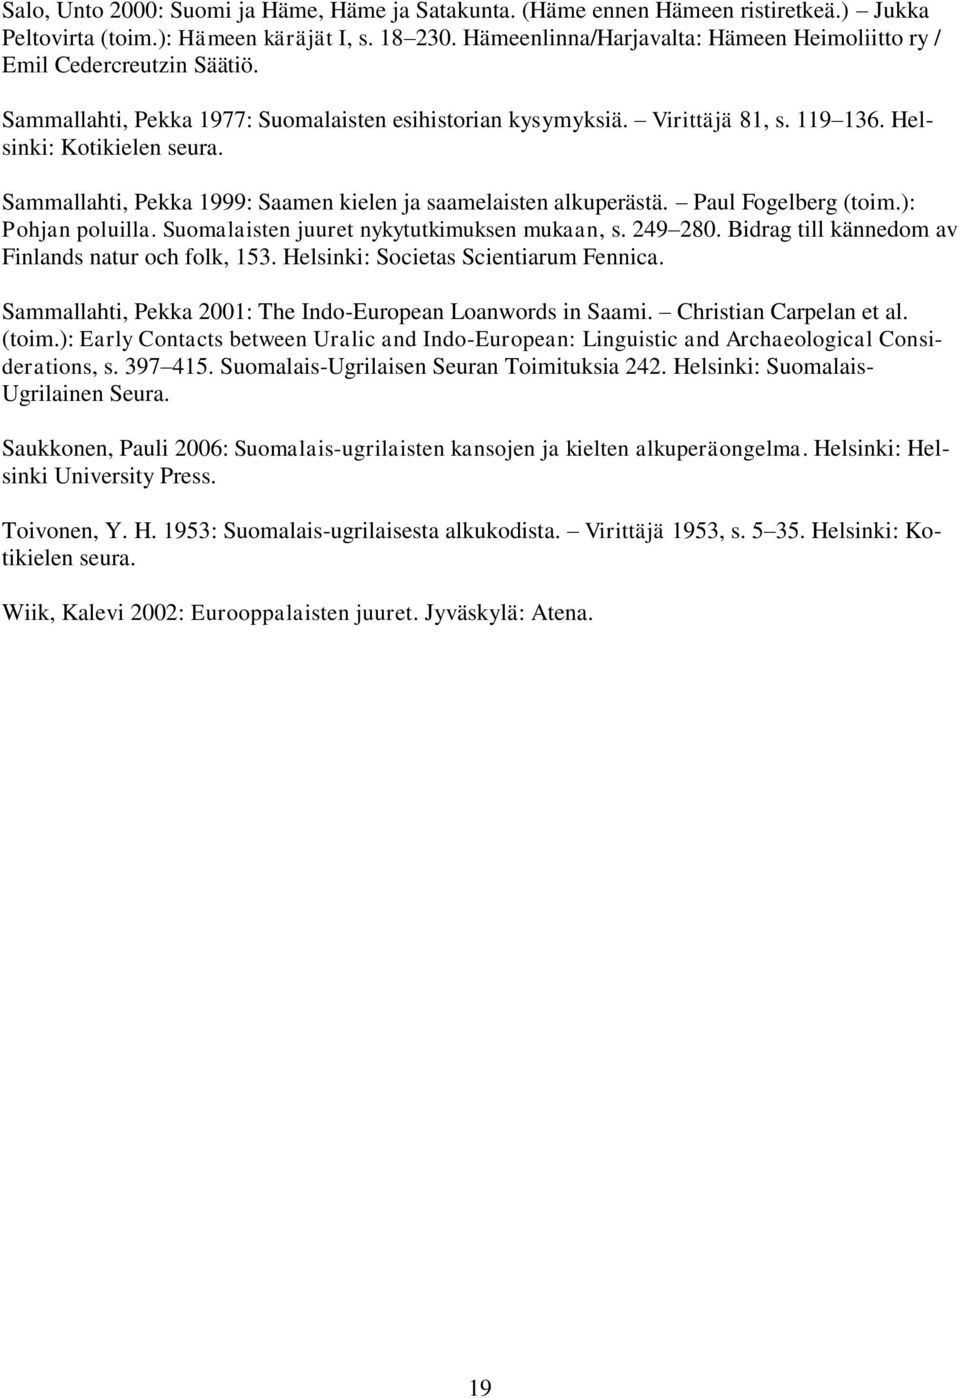 Sammallahti, Pekka 1999: Saamen kielen ja saamelaisten alkuperästä. Paul Fogelberg (toim.): Pohjan poluilla. Suomalaisten juuret nykytutkimuksen mukaan, s. 249 280.